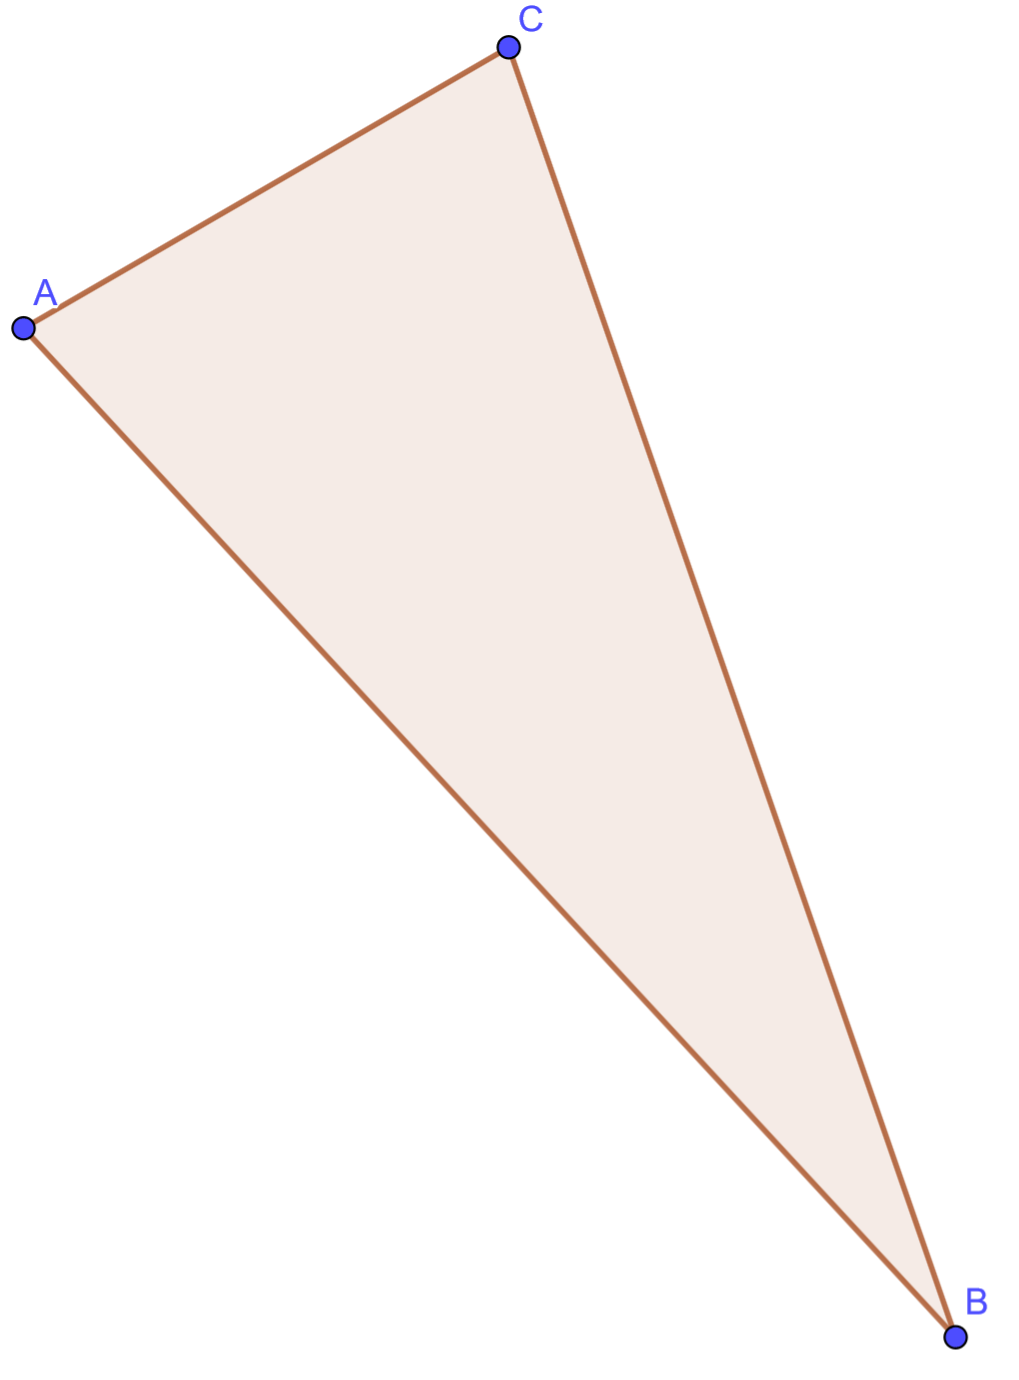 Zagadka: trójkątna przechadzka